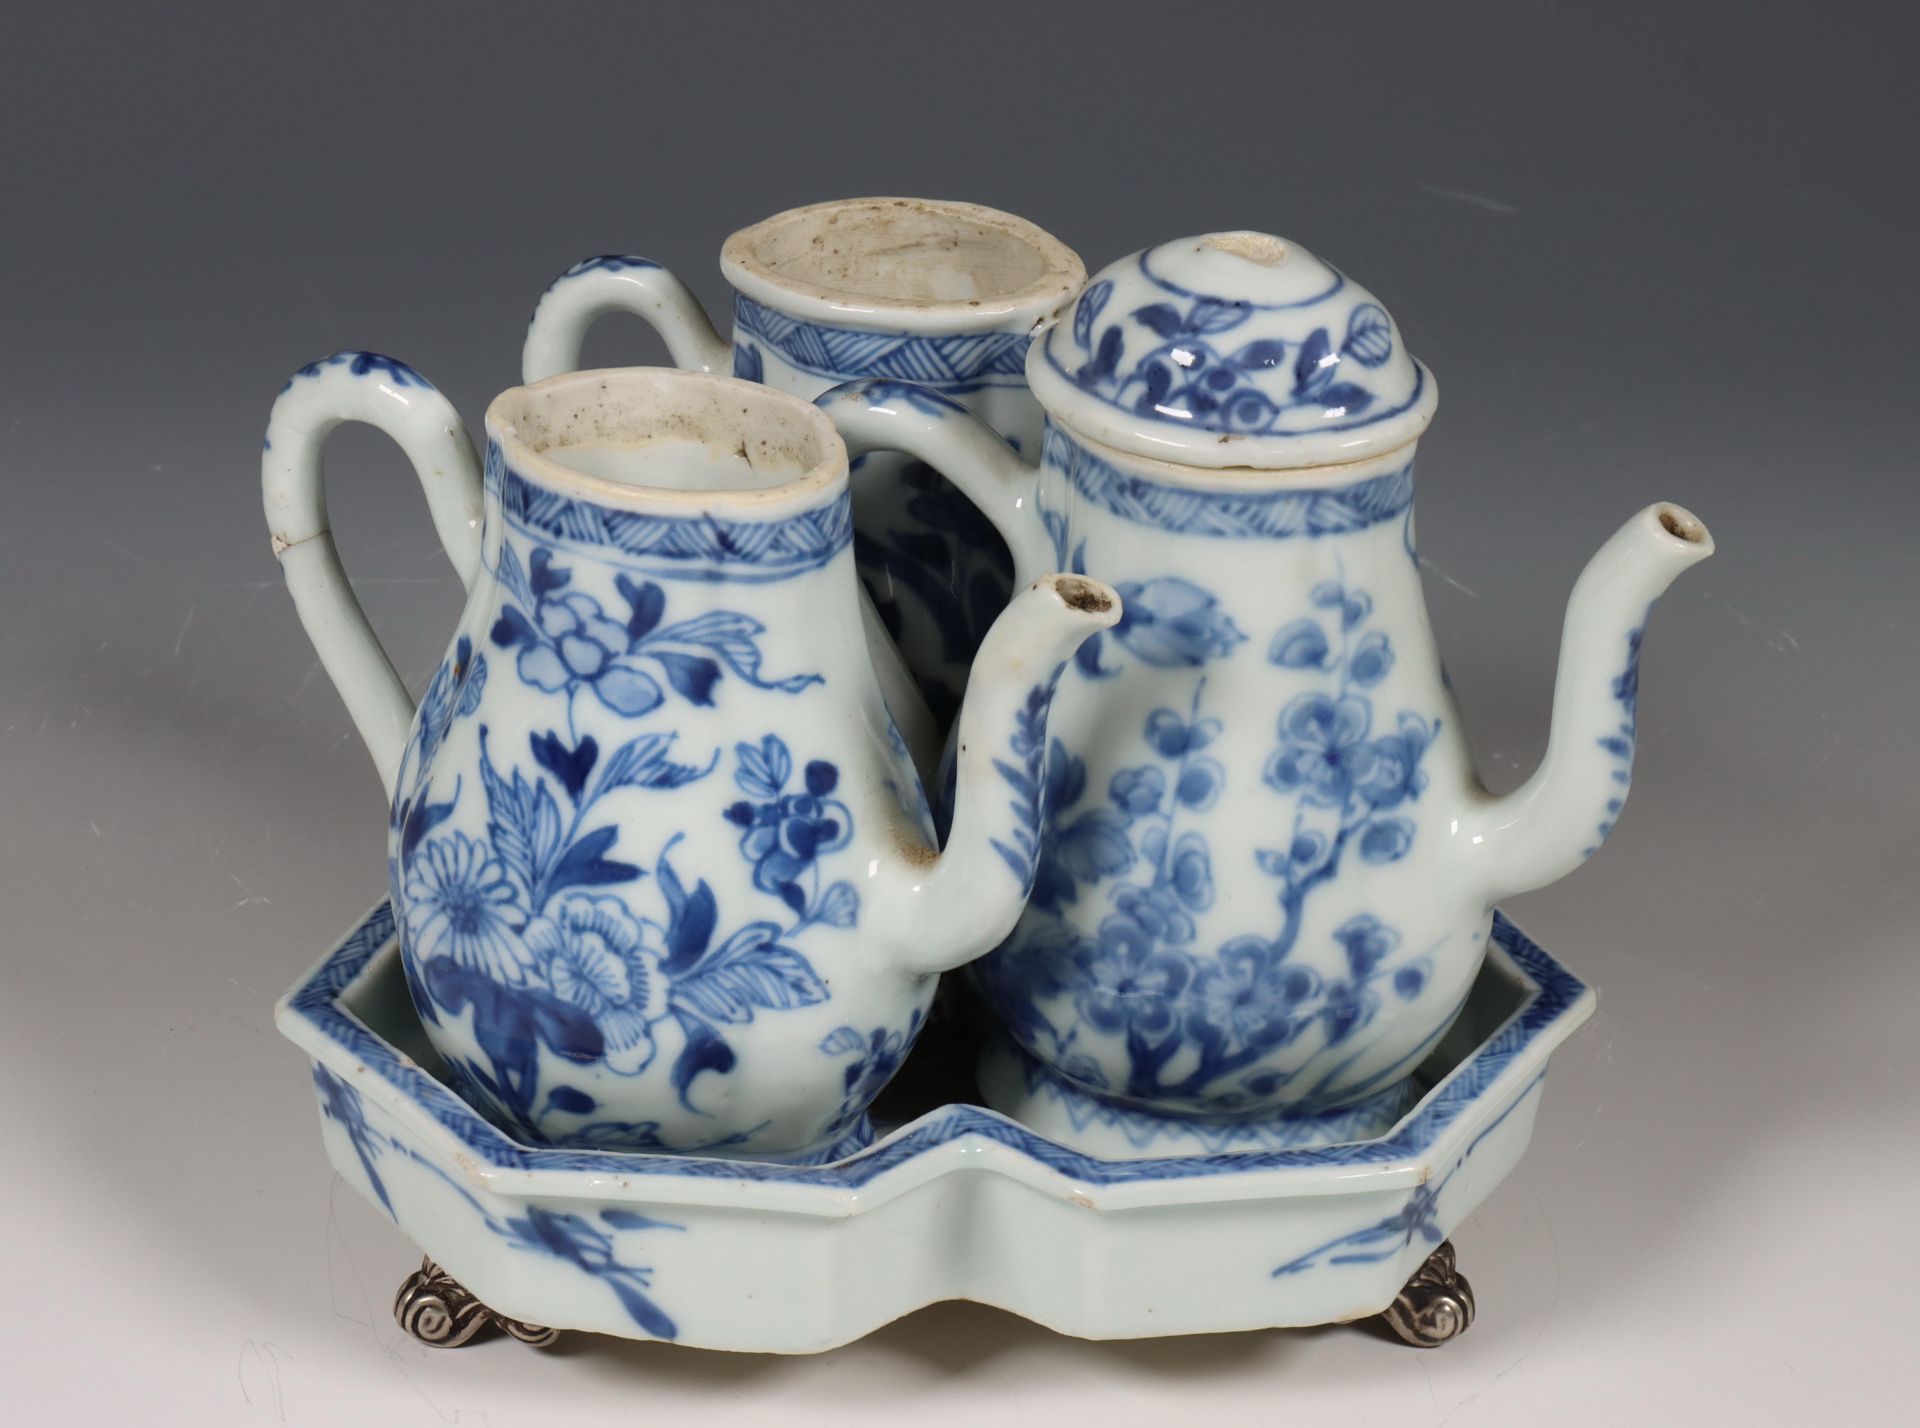 China, samengesteld blauw-wit porseleinen olie- en azijnstel, 18e eeuw, - Bild 3 aus 6